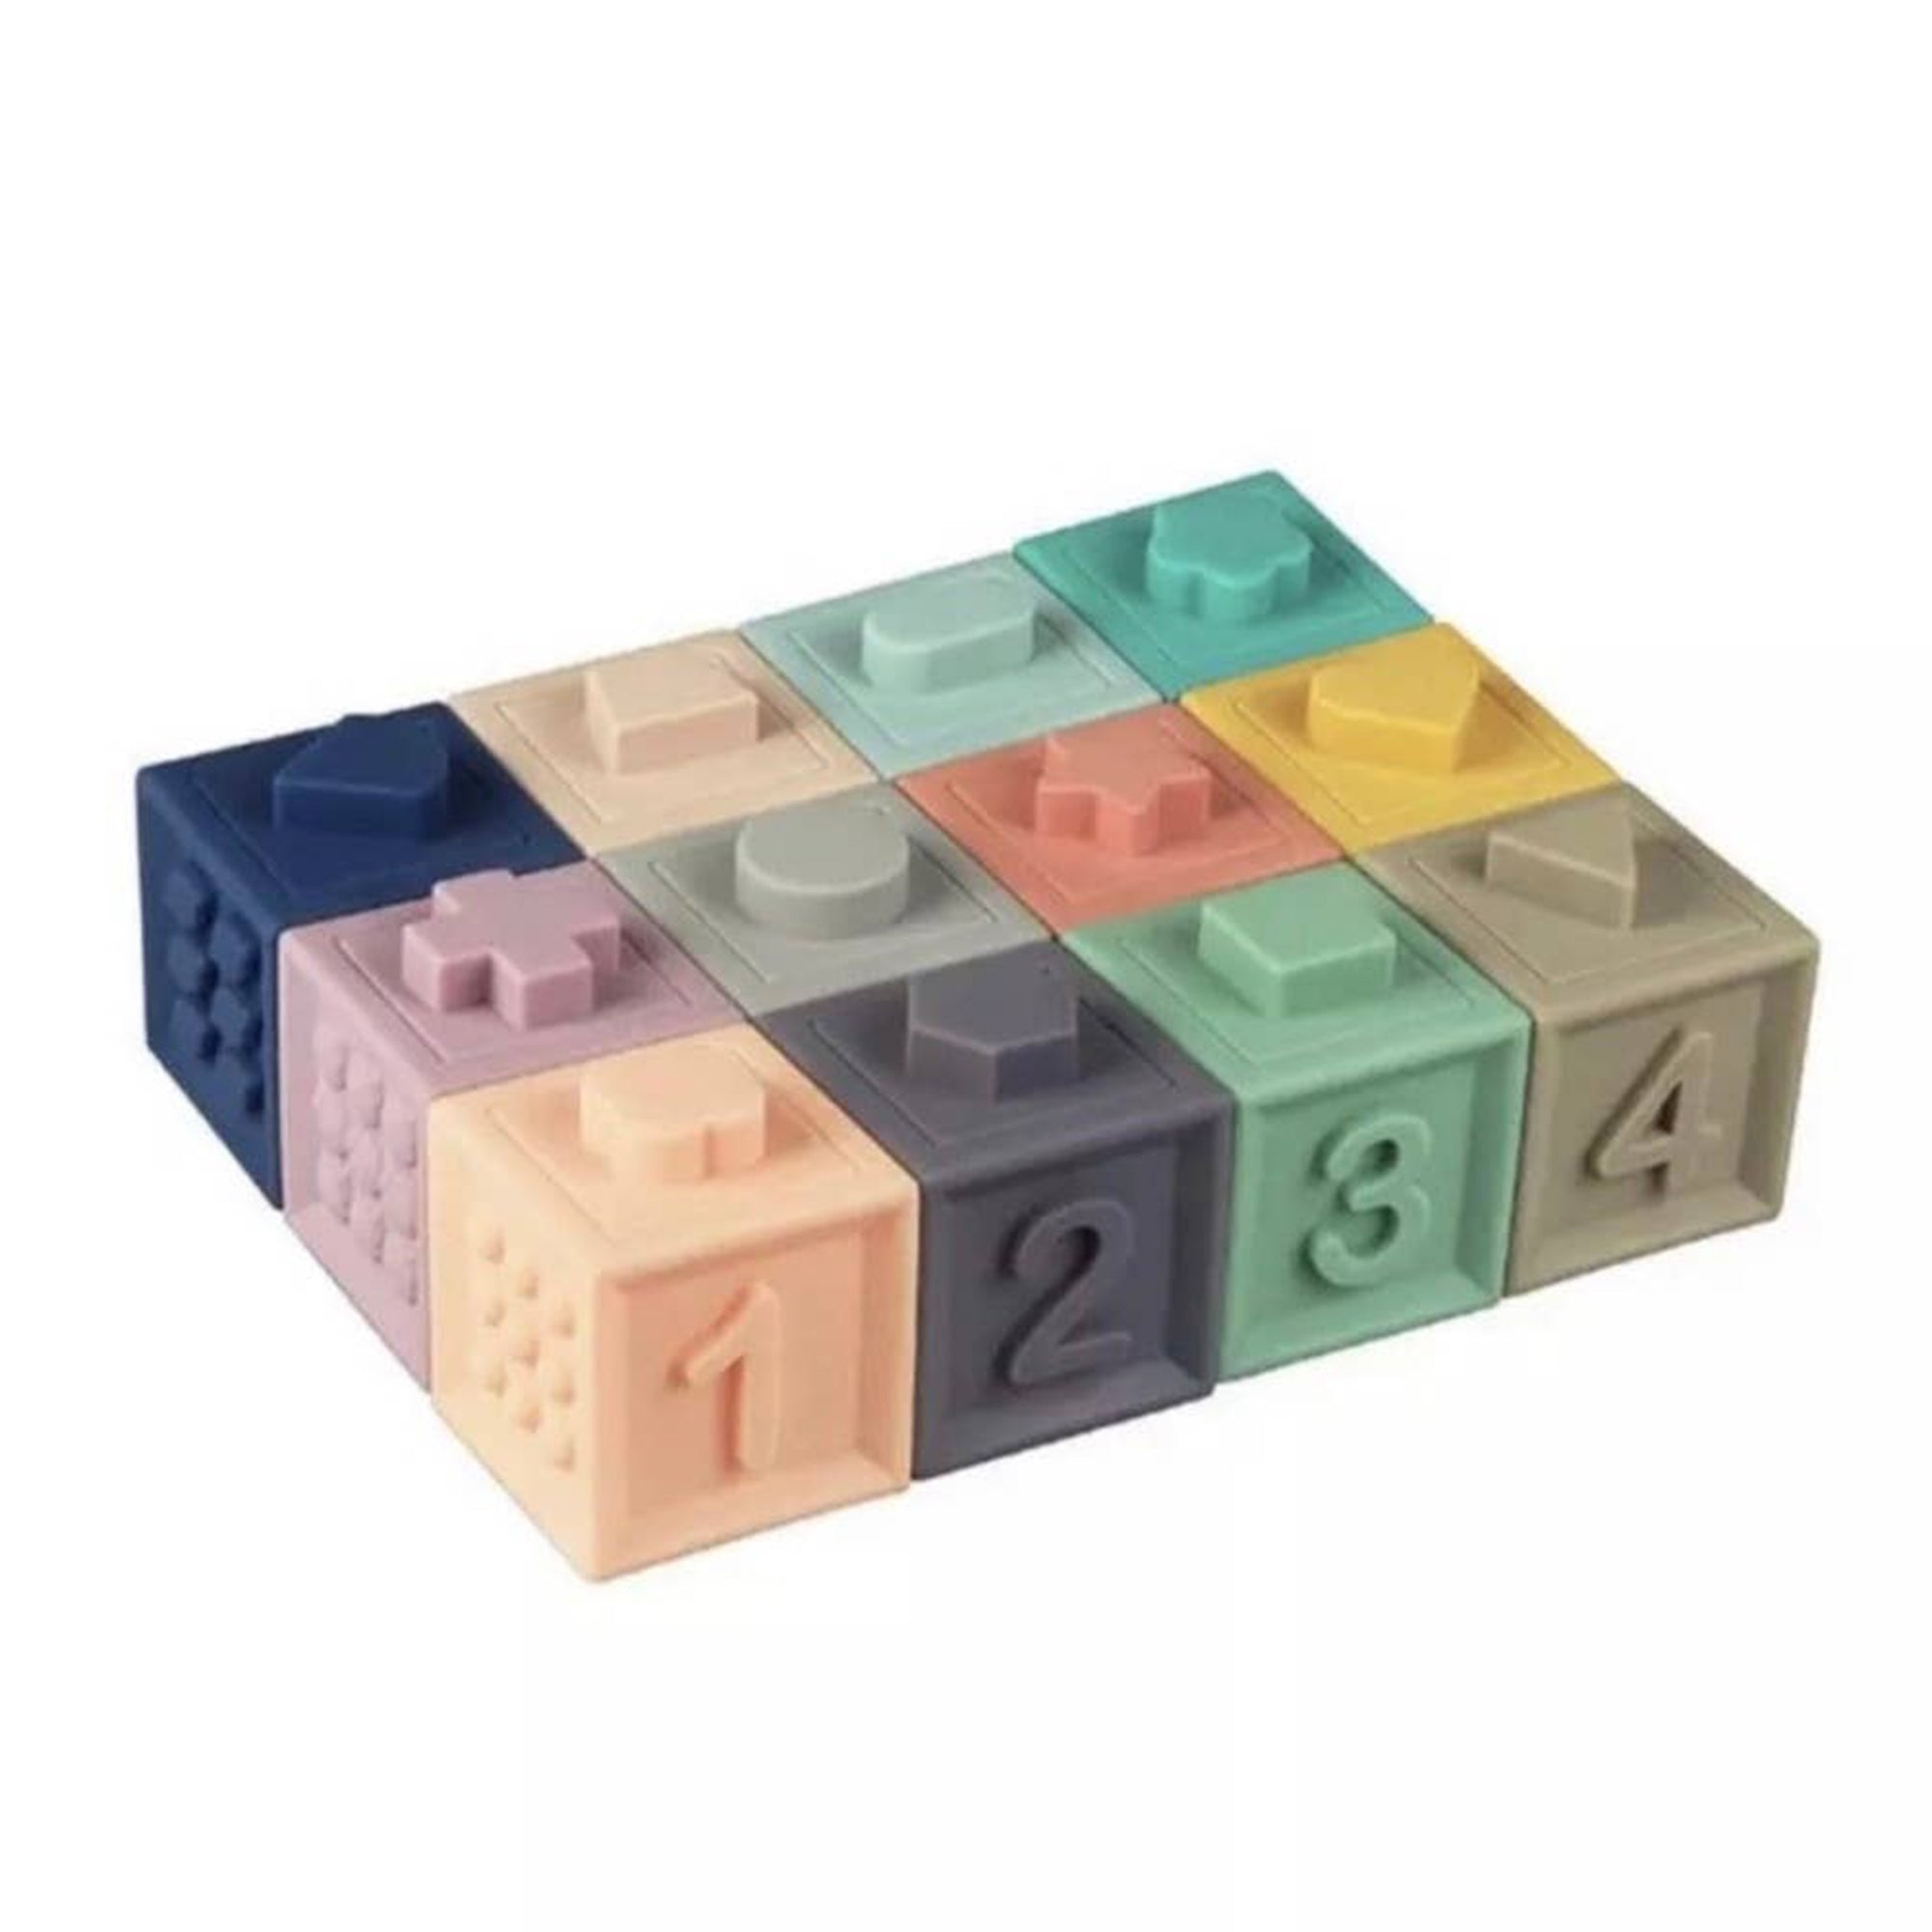 Multicolor Silicone Building Blocks Set